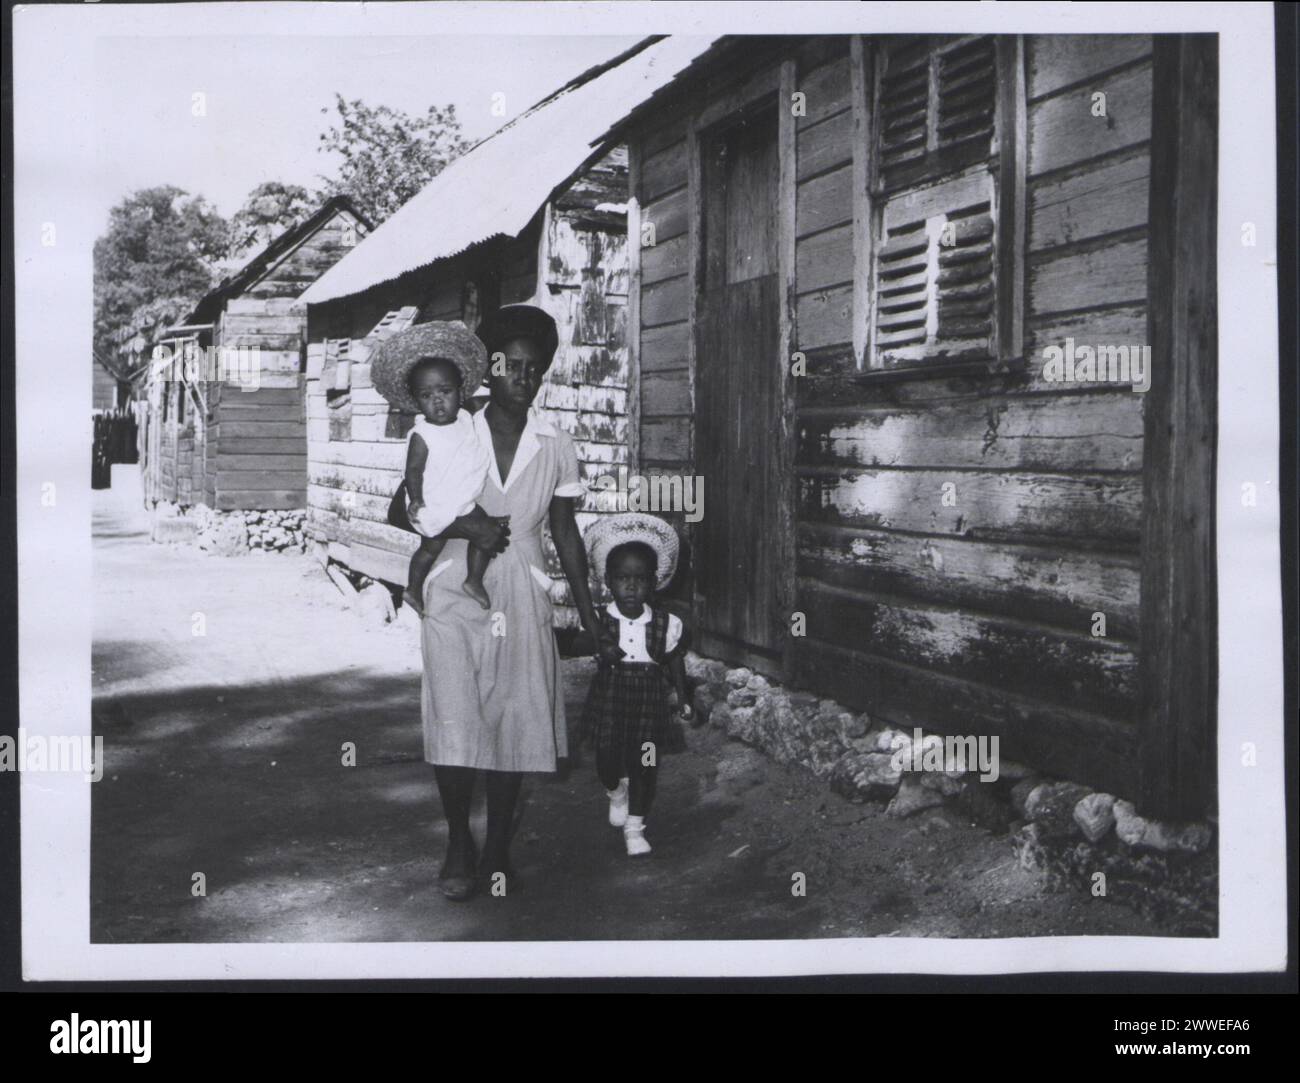 Descrizione: Barbados. Una donna delle Barbadie e i suoi due figli lasciano la loro casa in una zona sovraffollata di Bridgetown. Fotografia n. D 76957 Fotografia ufficiale delle Barbados compilata dall'Ufficio centrale delle informazioni. Luogo: Barbados Data: 1955 Mar barbados, caraibi, caribbeanthrough alens Foto Stock